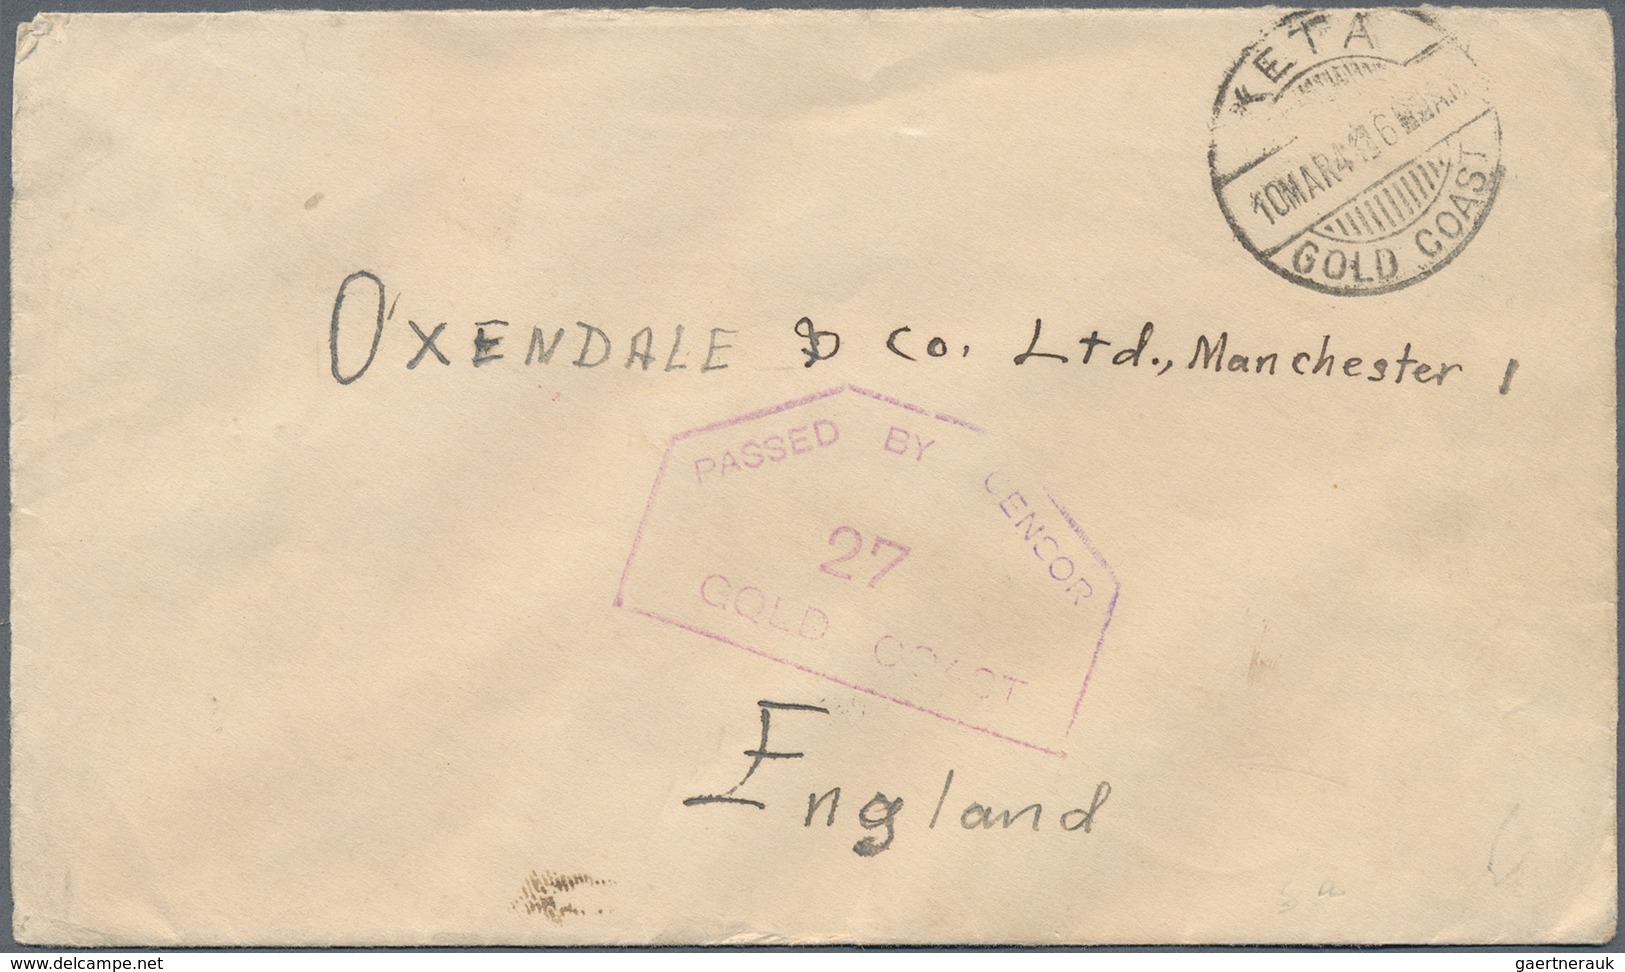 22633 Goldküste: 1894/1952: 36 interesting envelopes, picture postcards and postal stationeries including